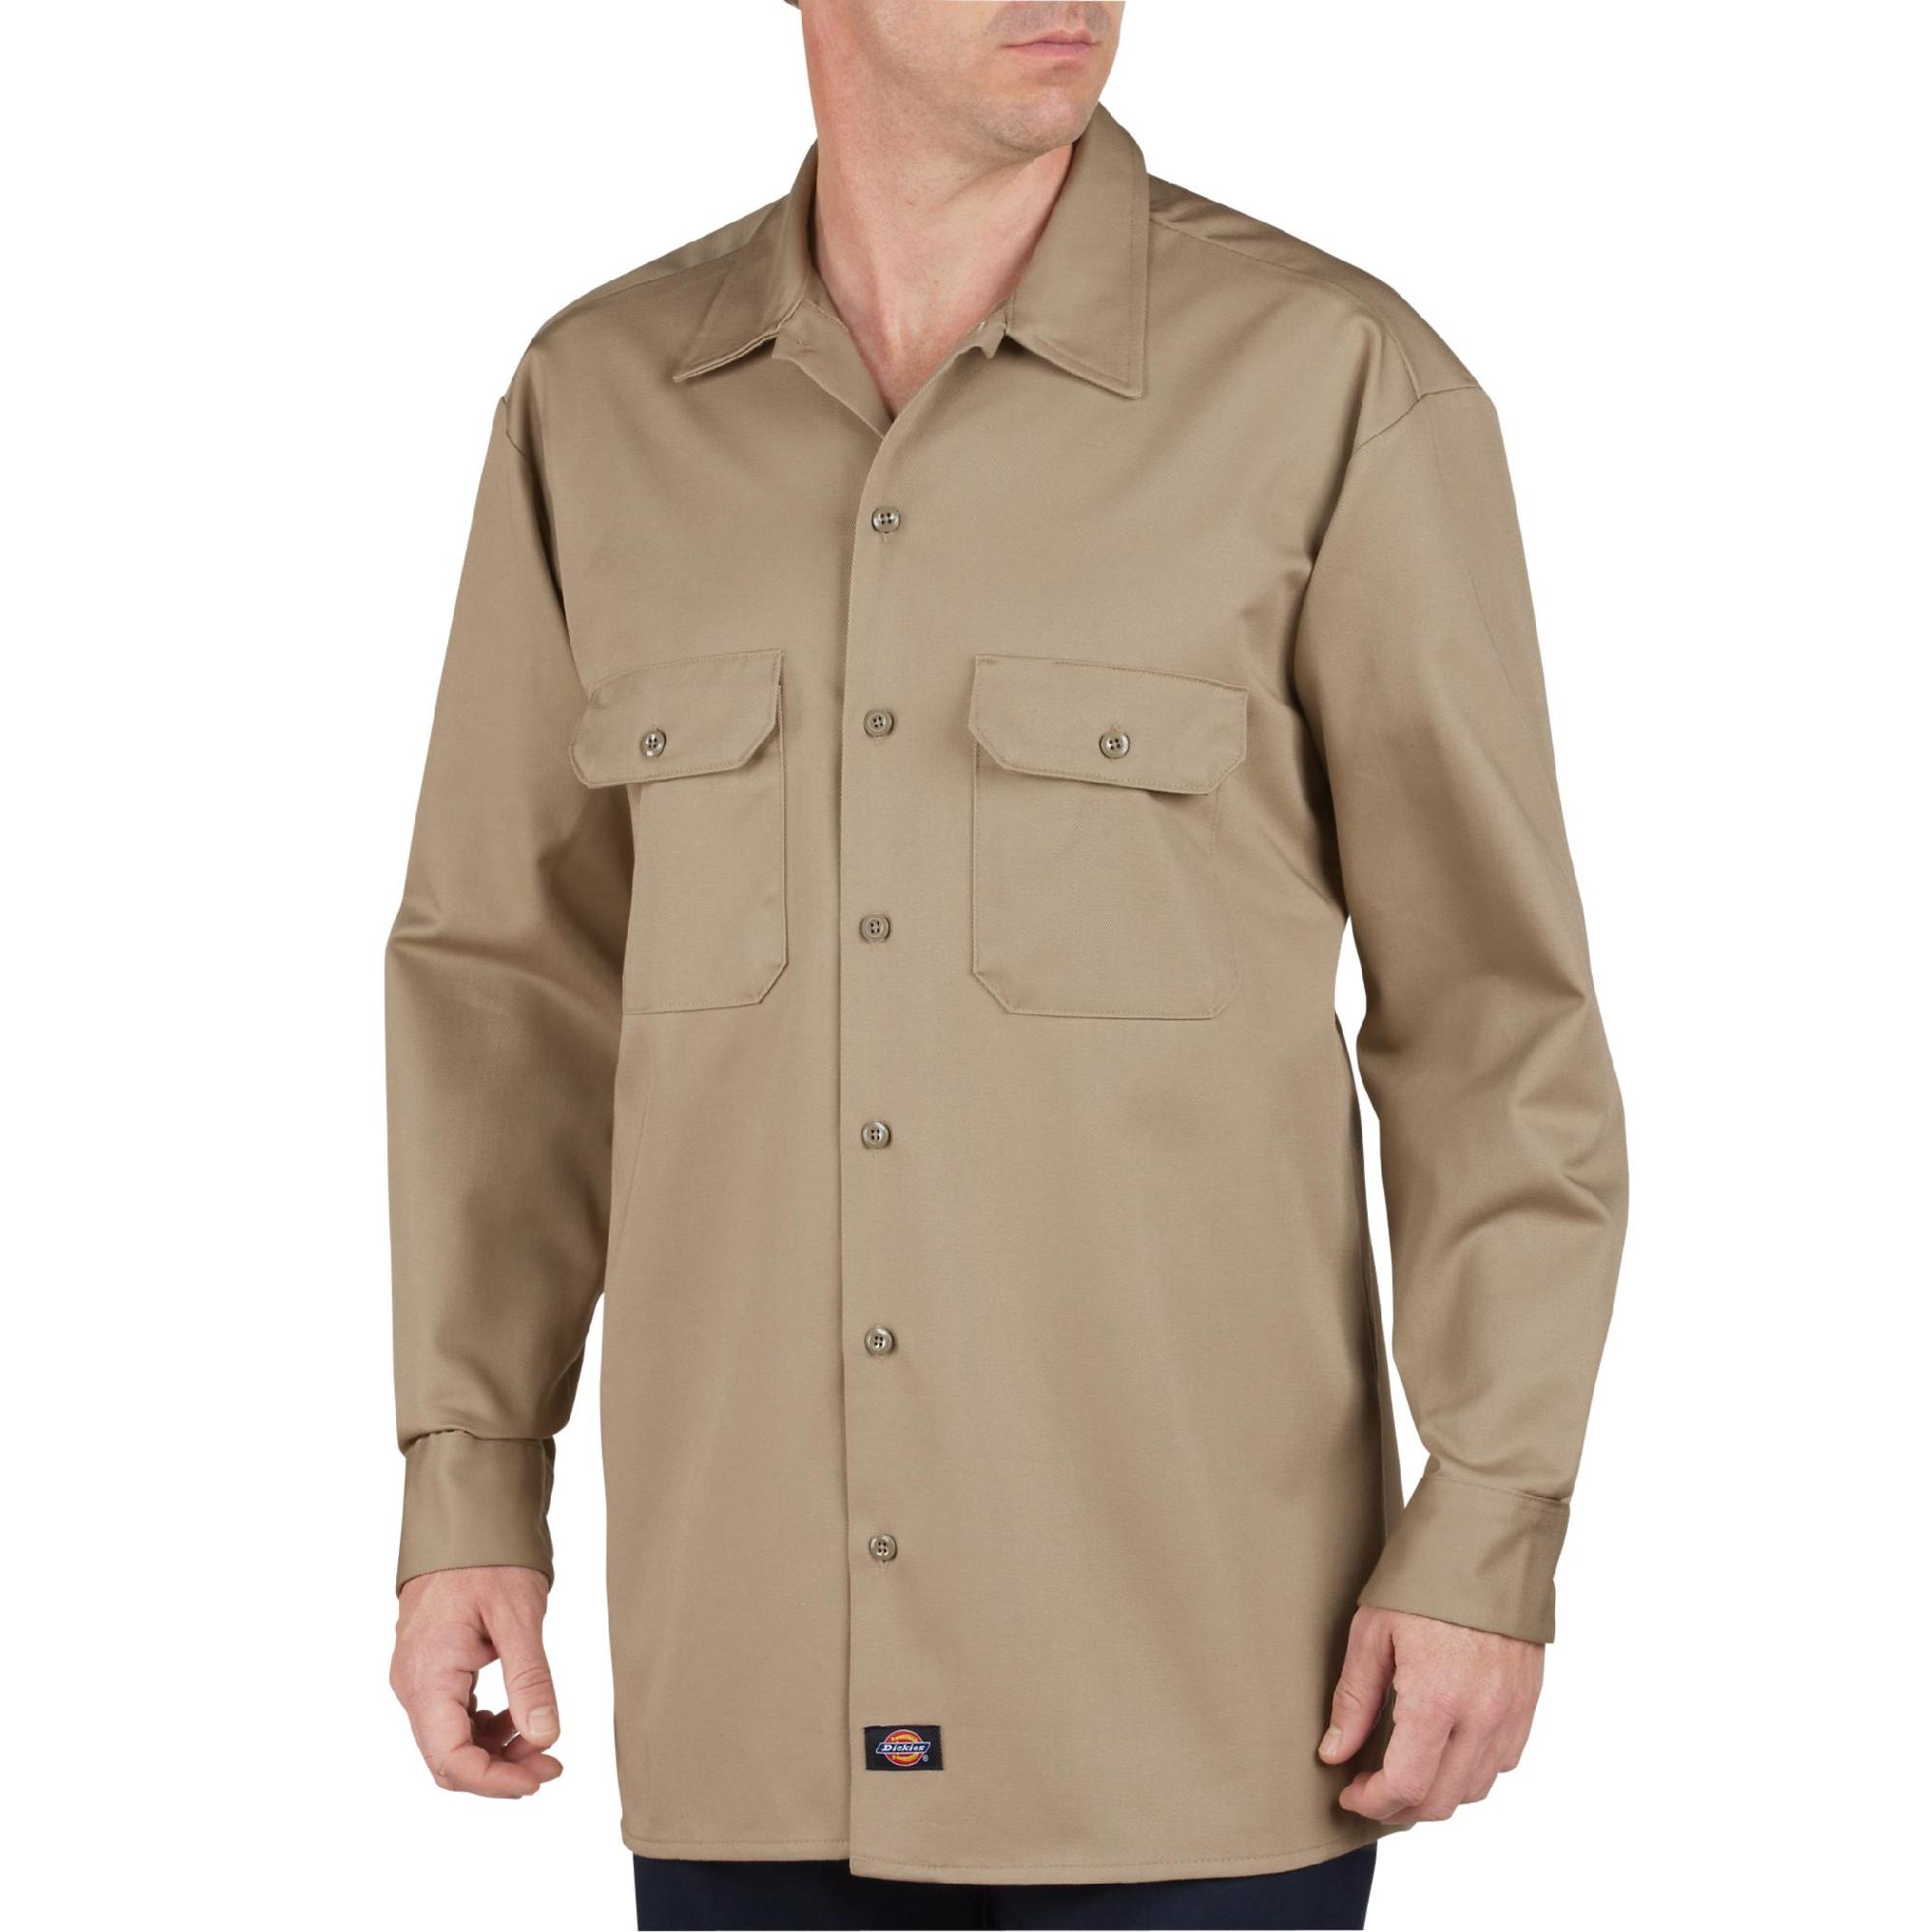 Men's Long Sleeve Heavyweight Cotton Work Shirt 549